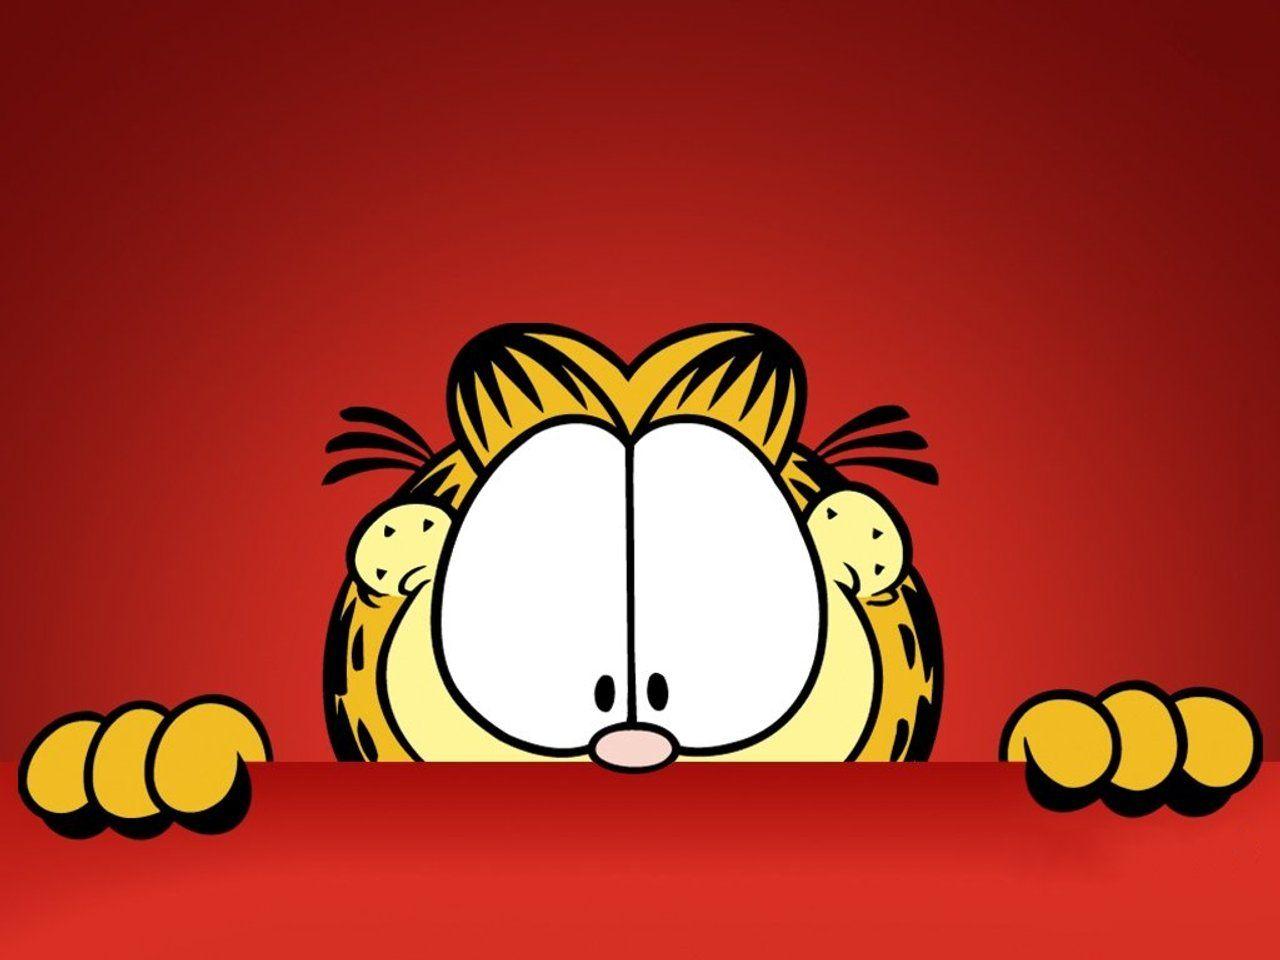 Garfield Cat Wallpaper 61369 1280x960 px